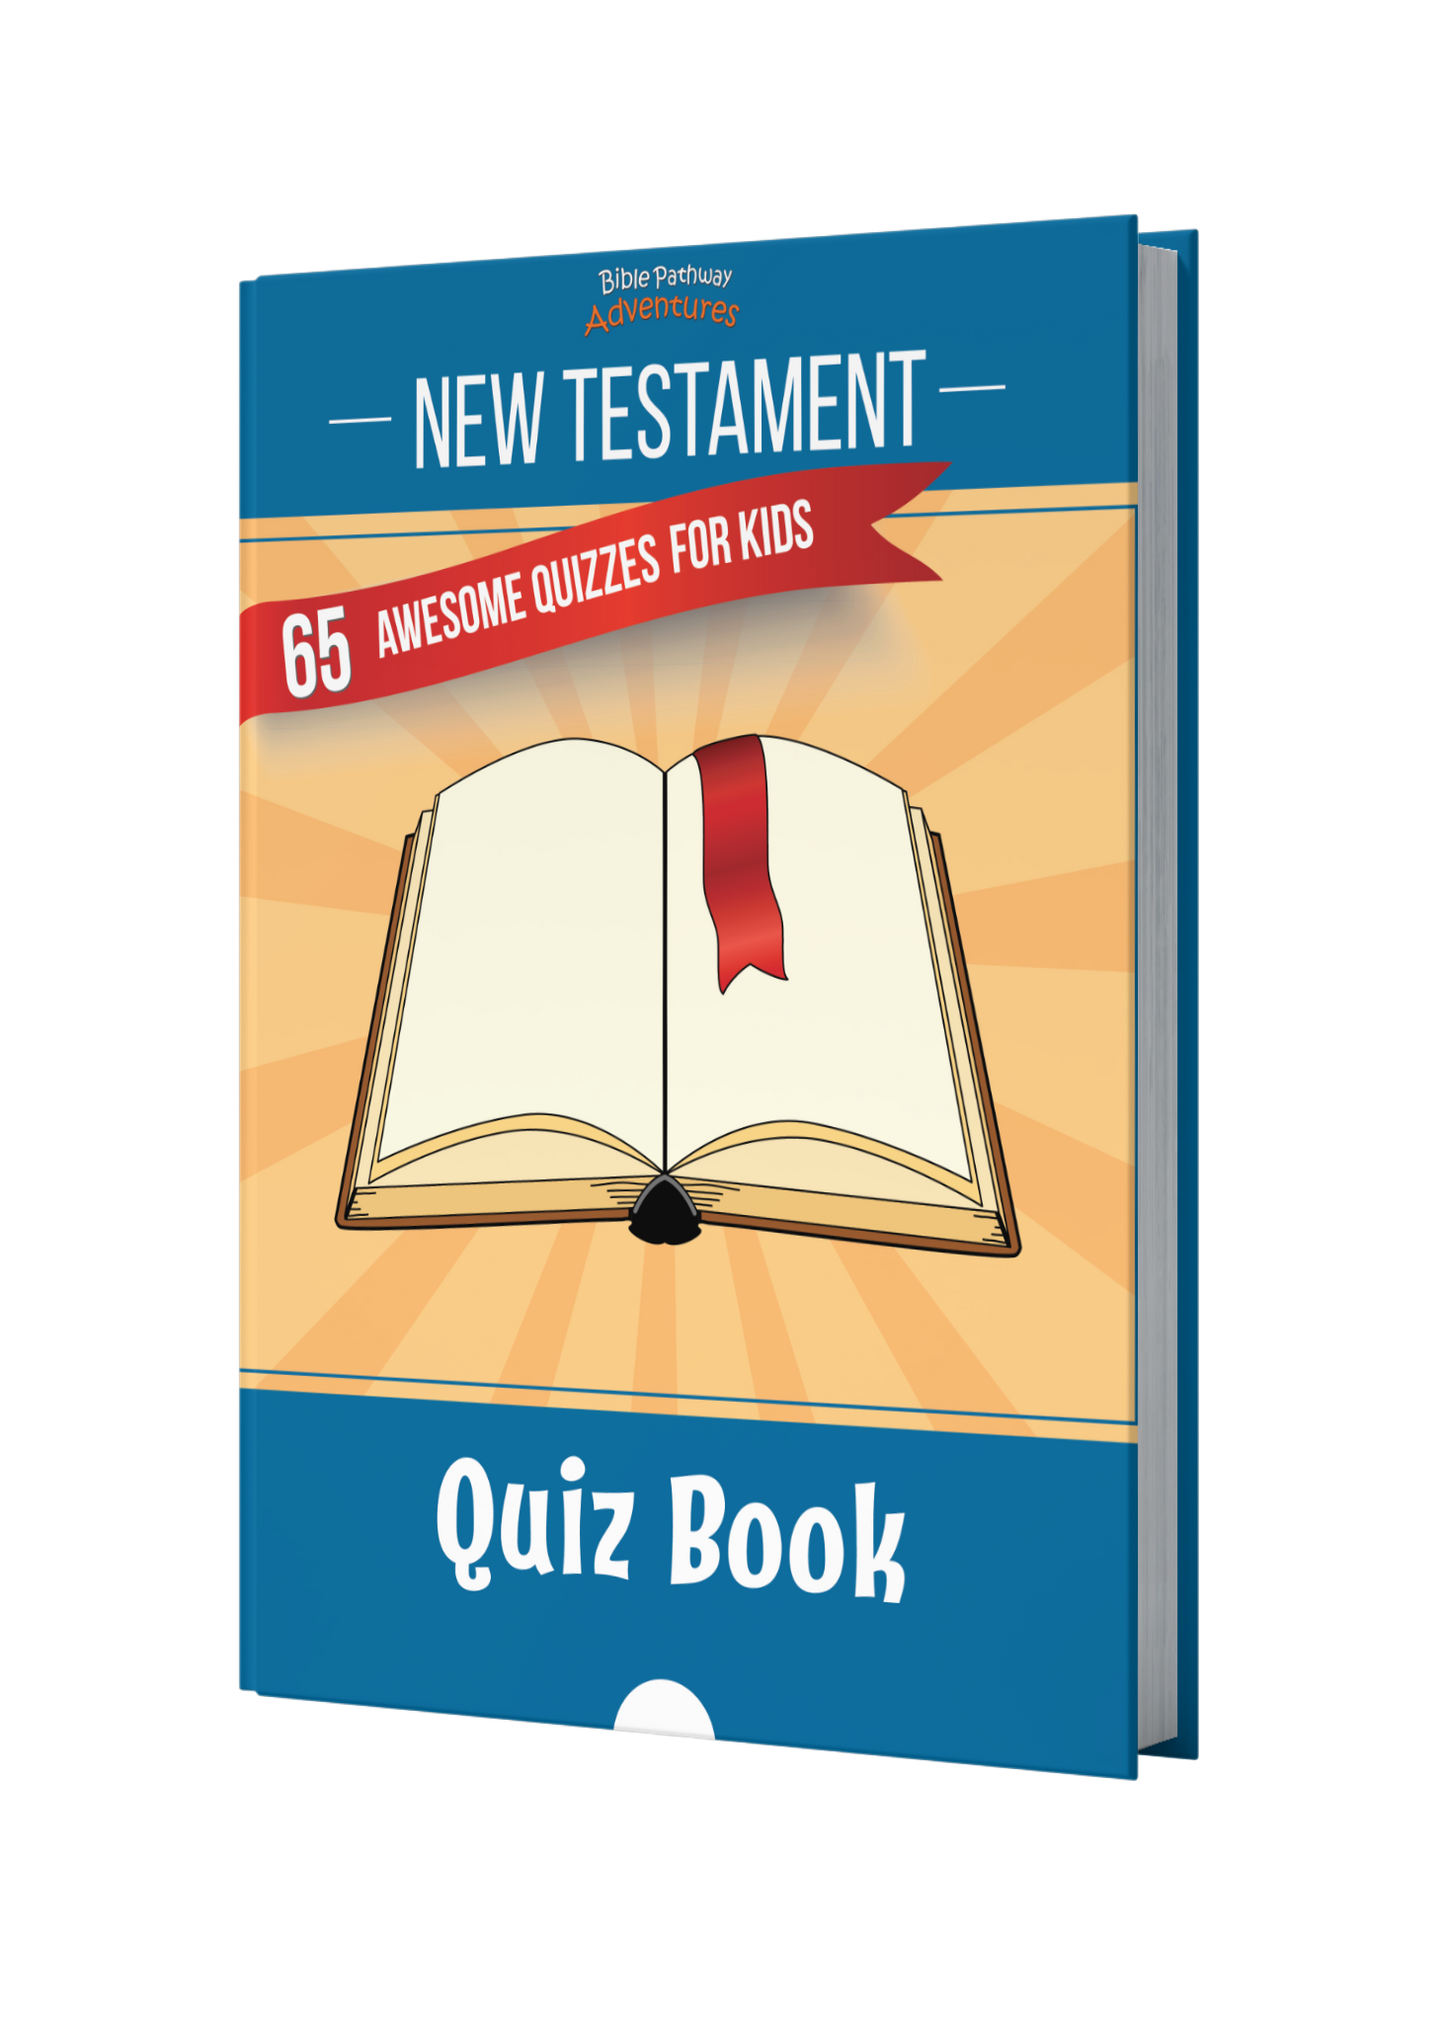 New testament quiz book paperback â bible pathway adventures